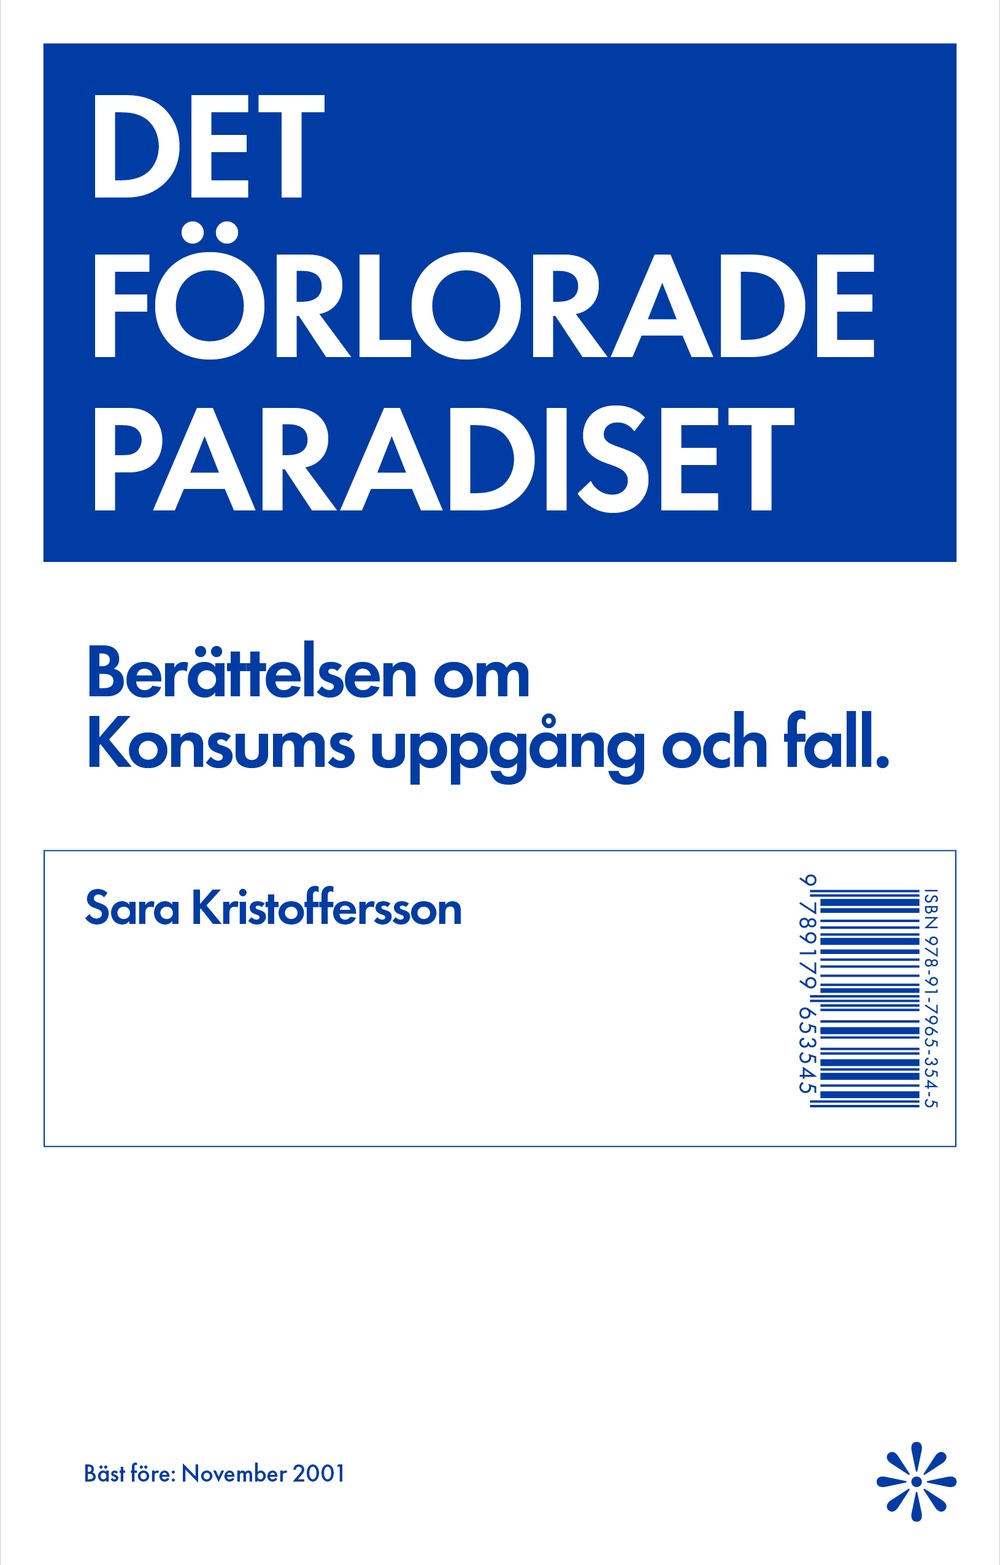 Omslag till boken "Det förlorade paradiset" av Sara Kristoffersson. 
Form: BankerWessel. Förlag: Volante.